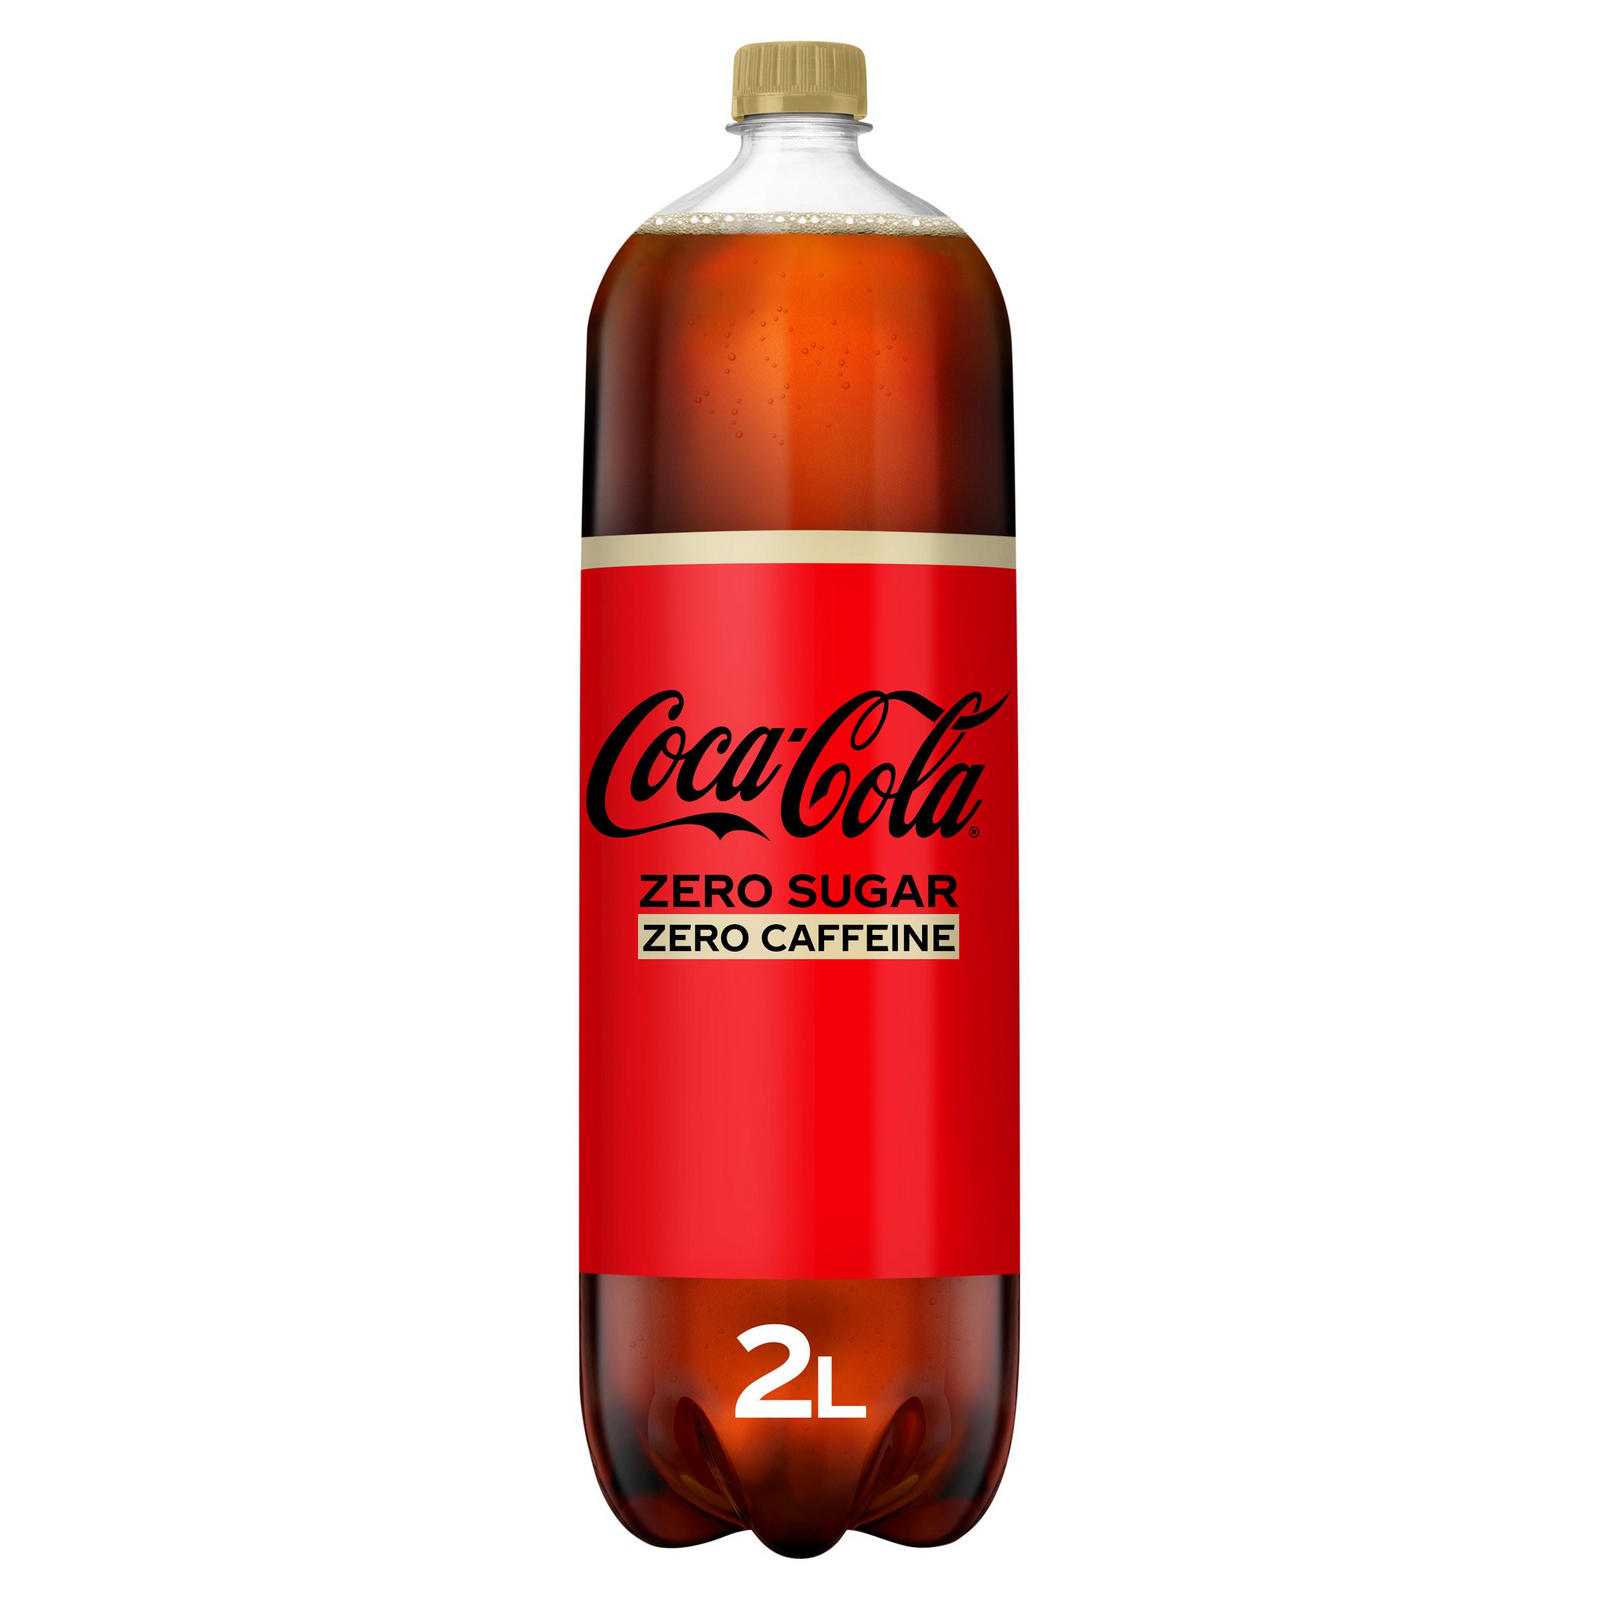 Coca Cola Zero Sugar. Берн Зеро Шугар. Flash x2 кофеин. Флеш 2 кофеин.